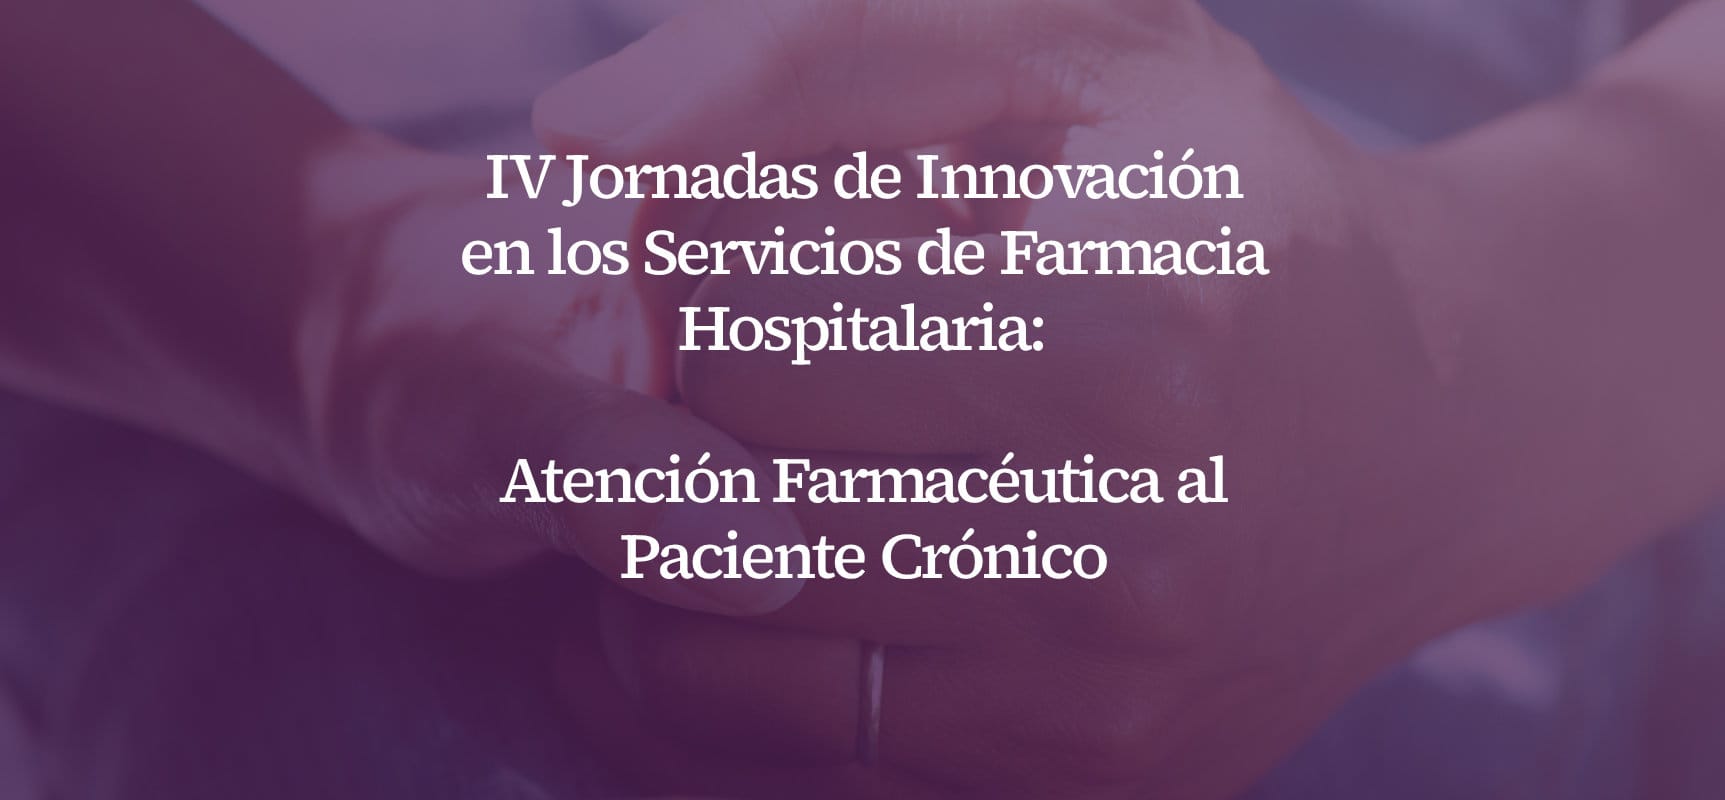 IV Jornadas de Innovación en los Servicios de Farmacia Hospitalaria